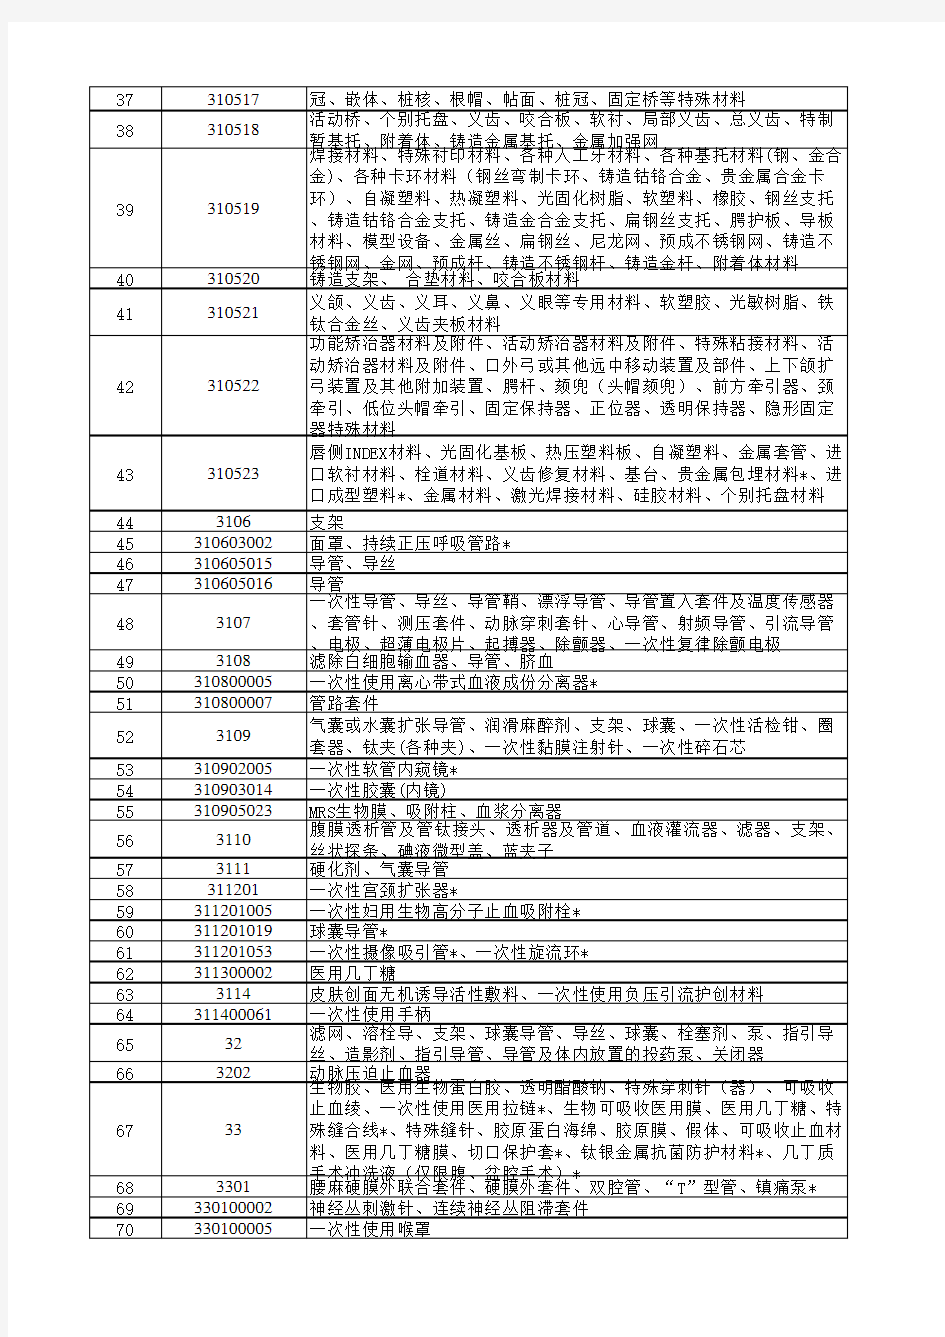 河北省另收费用一次性物品管理目录(2017年)